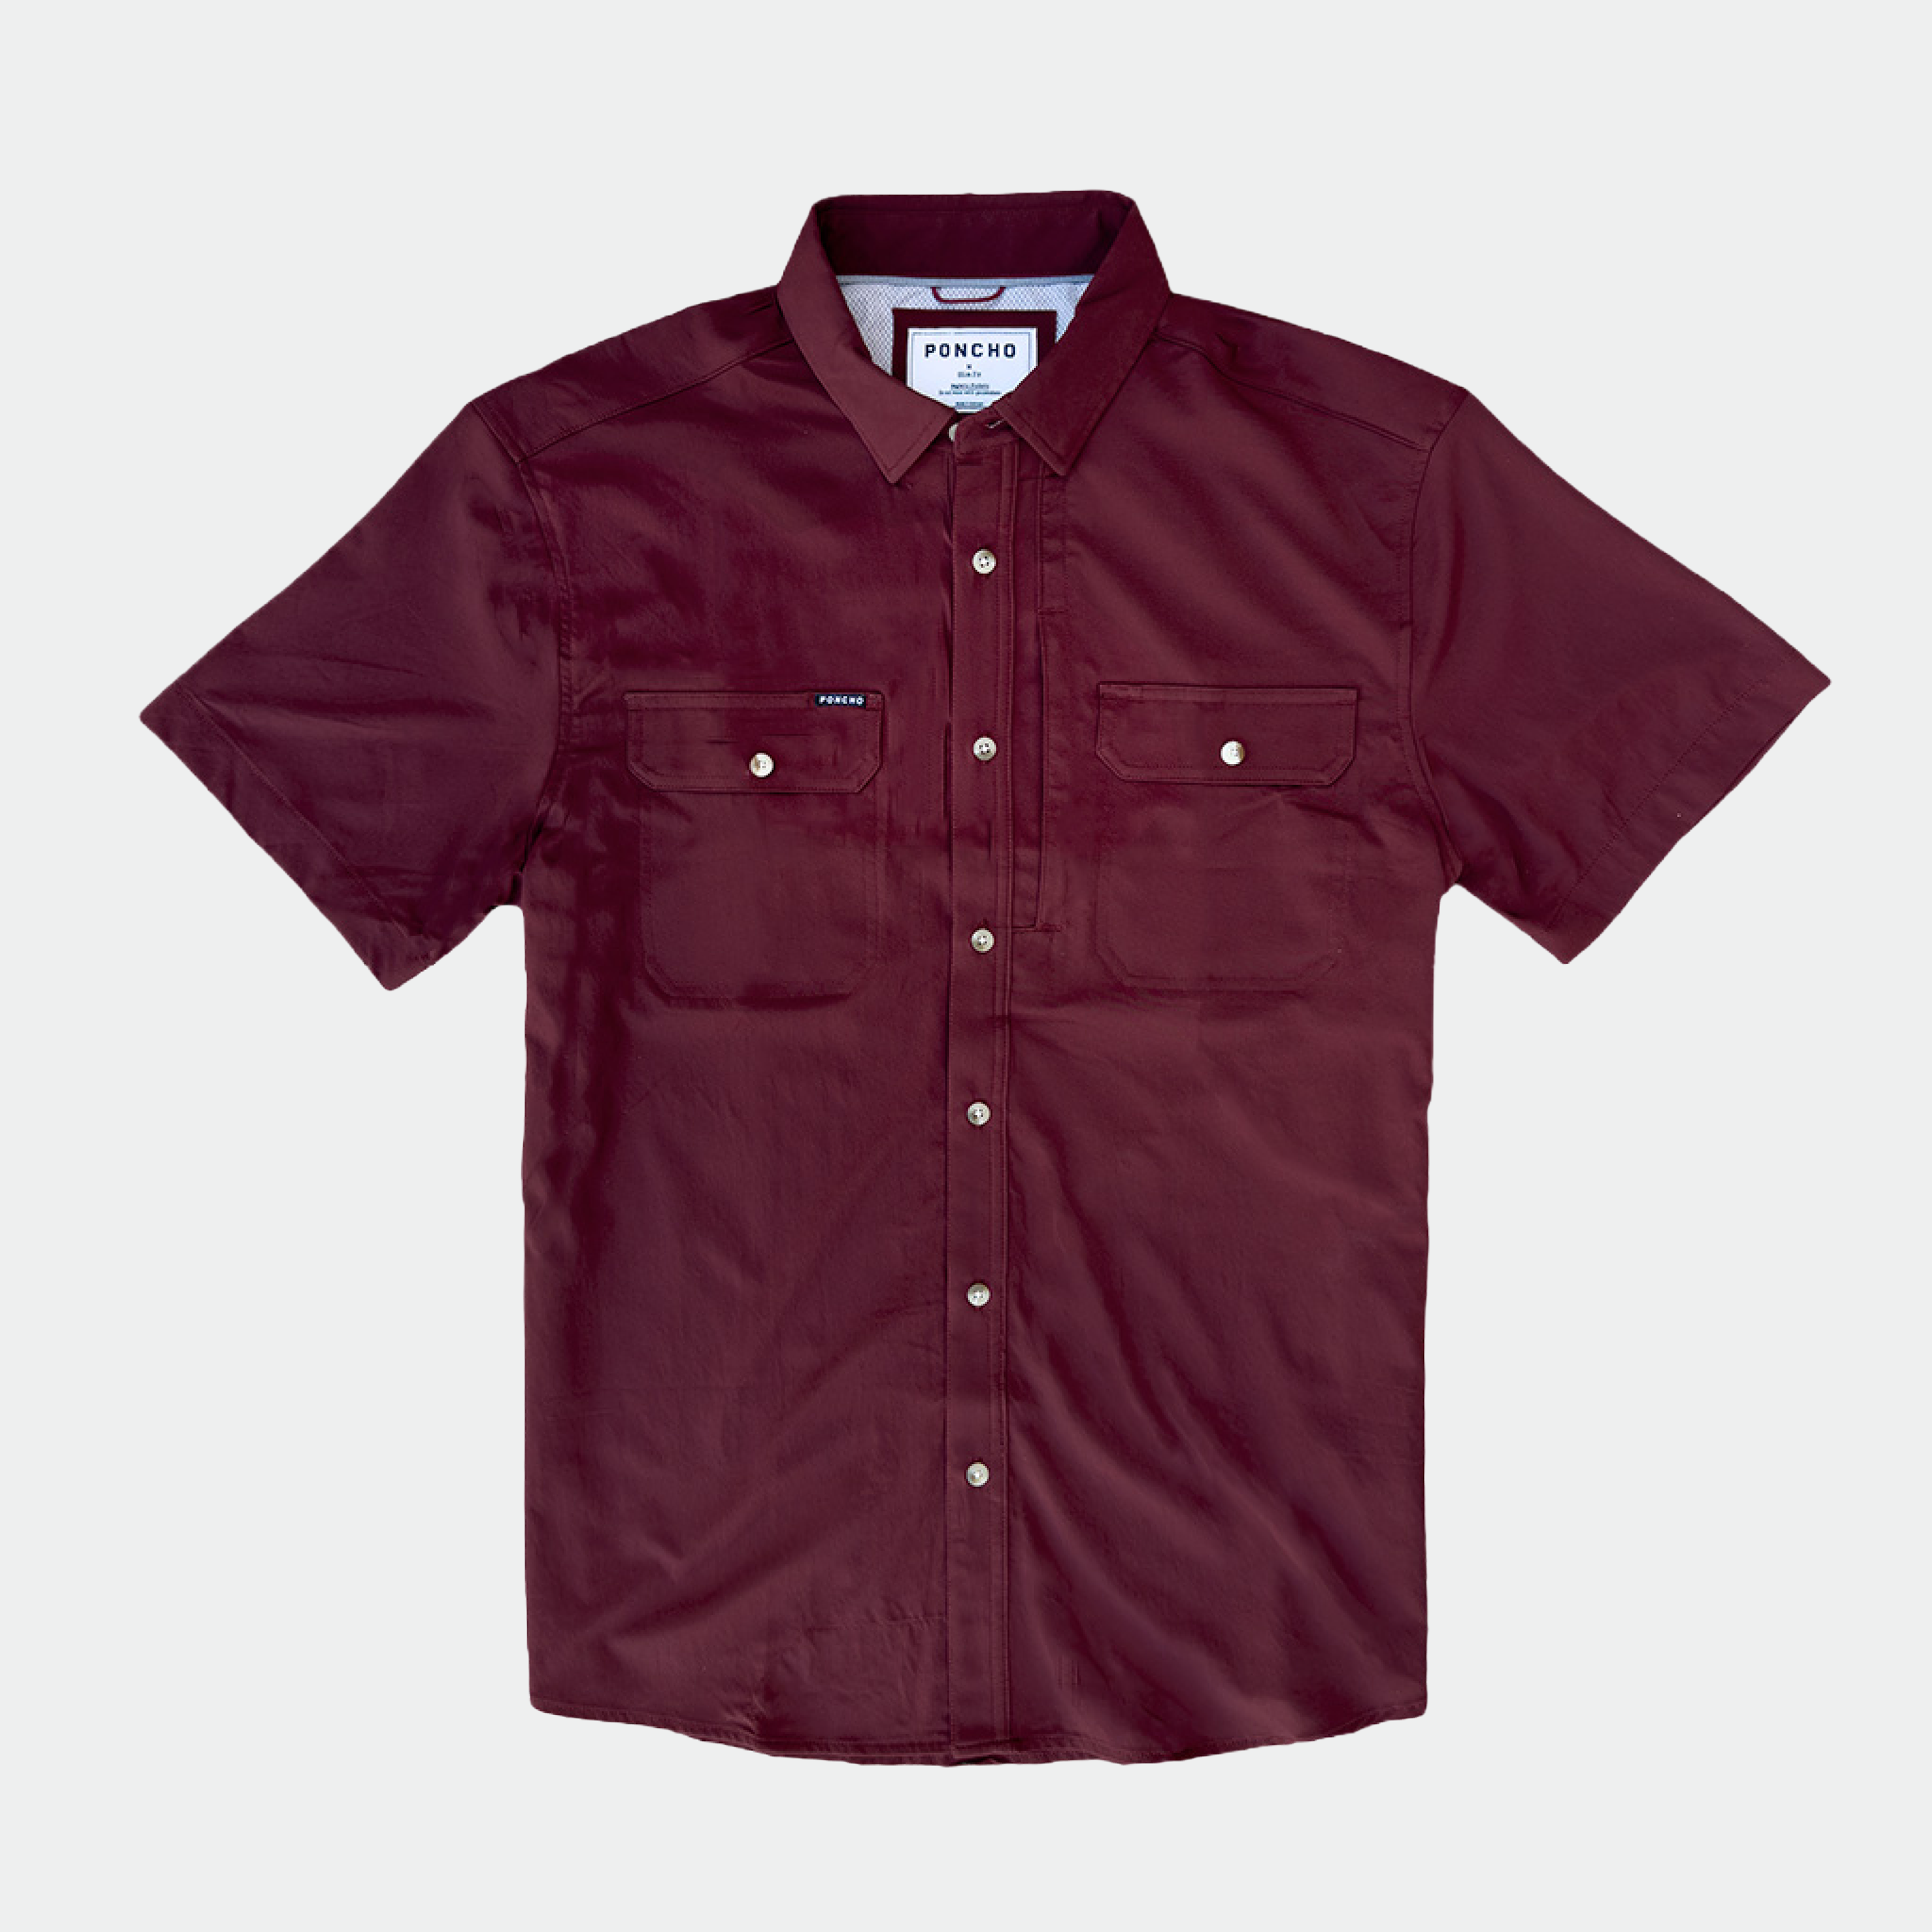 maroon short sleeve shirt